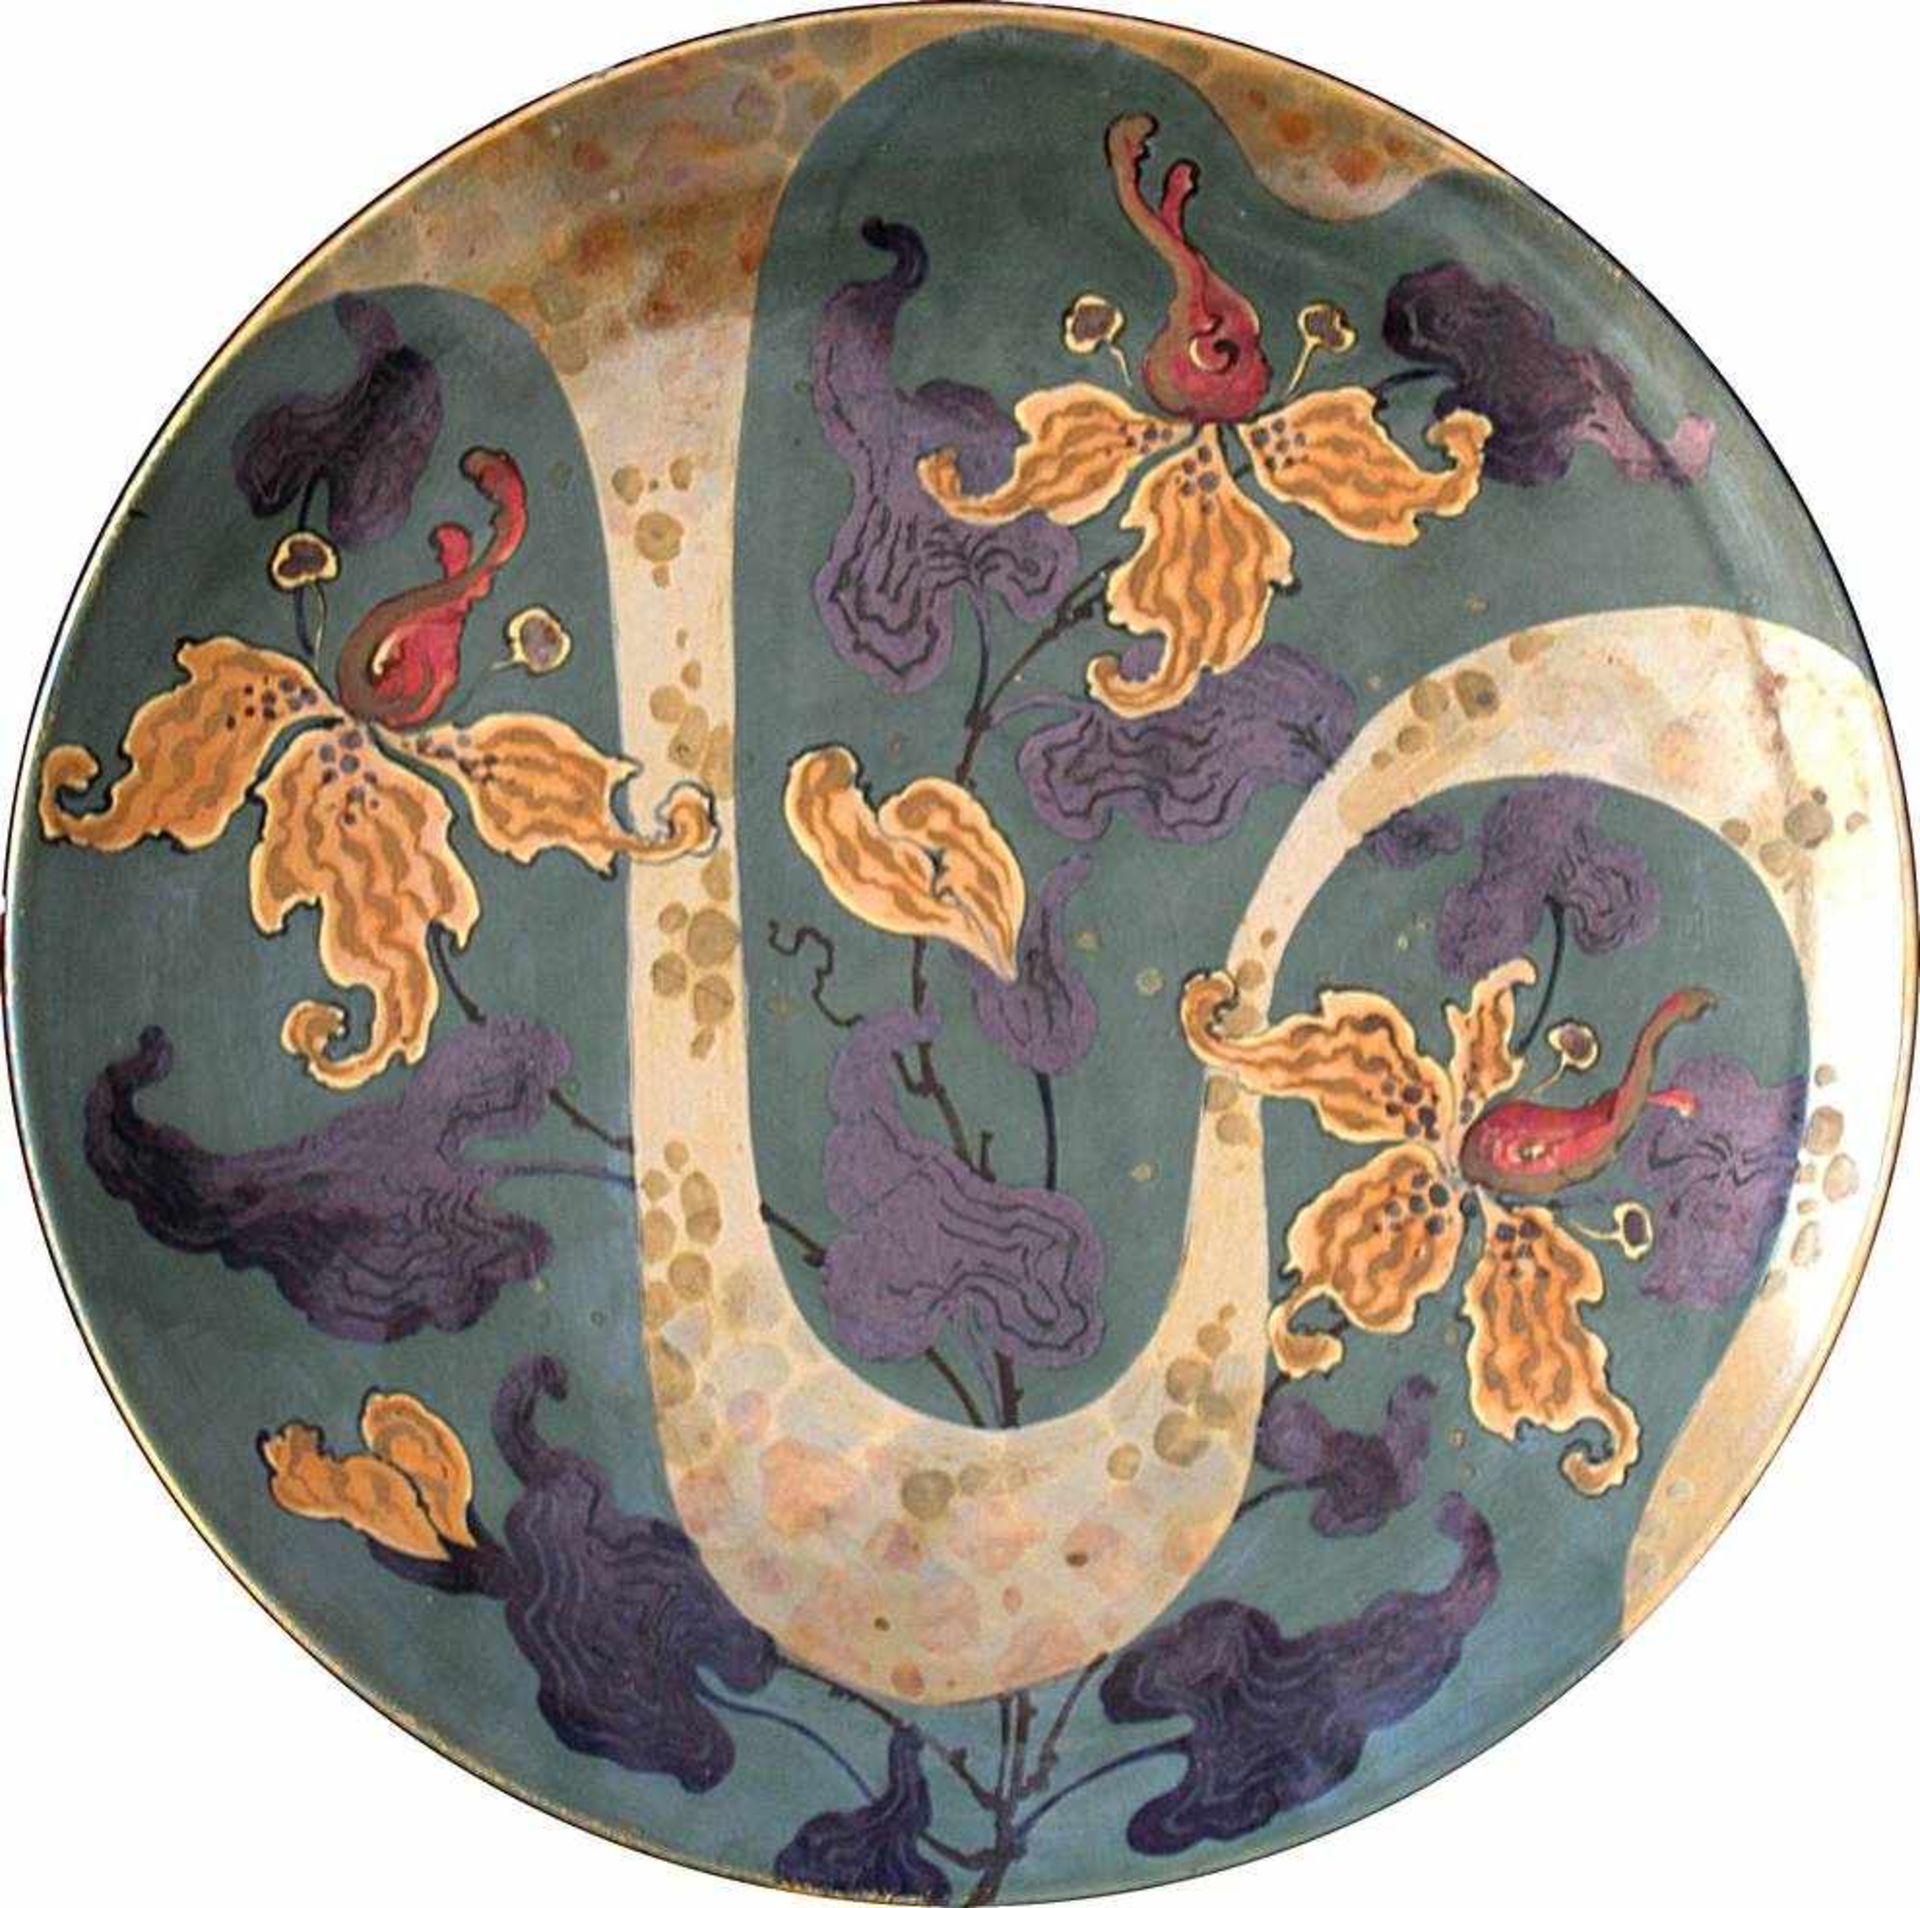 Wandteller Ernst Wahliss, Wien um 1900. Keramik mit polychromem Blumendekor und irisierender Glasur.